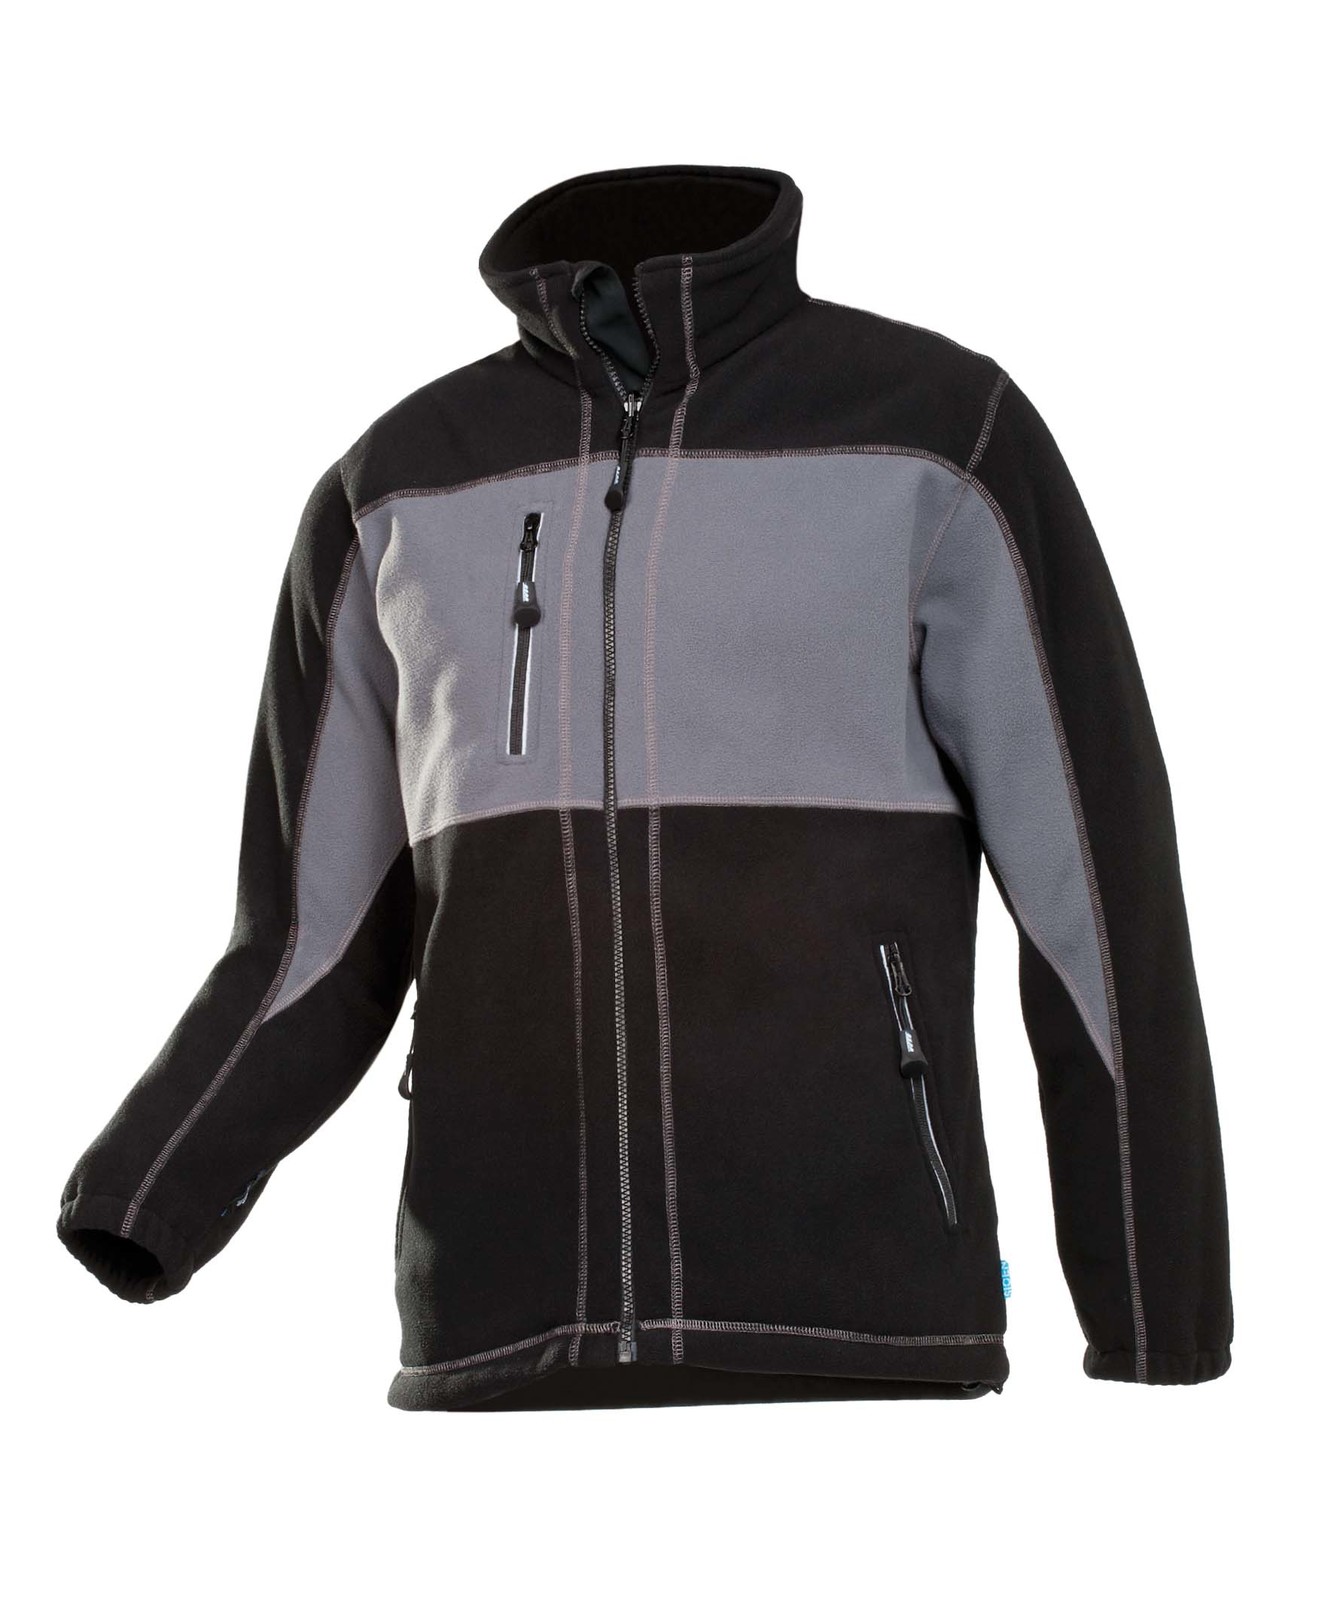 Fleece bunda Durango pánska - veľkosť: L, farba: sivá/čierna